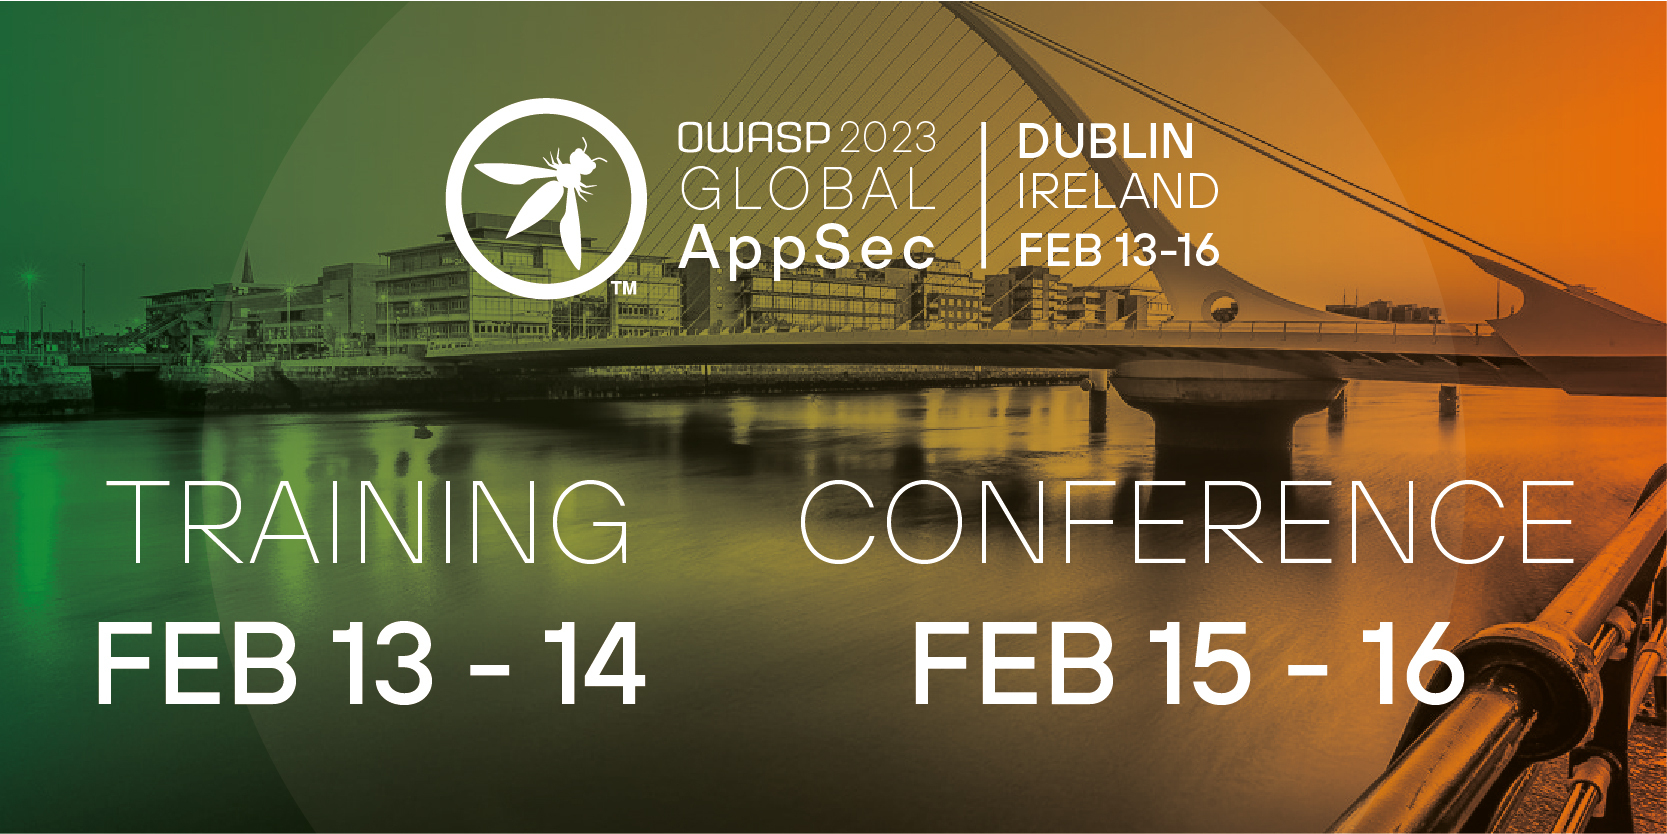 OWASP 2023 Global AppSec Dublin